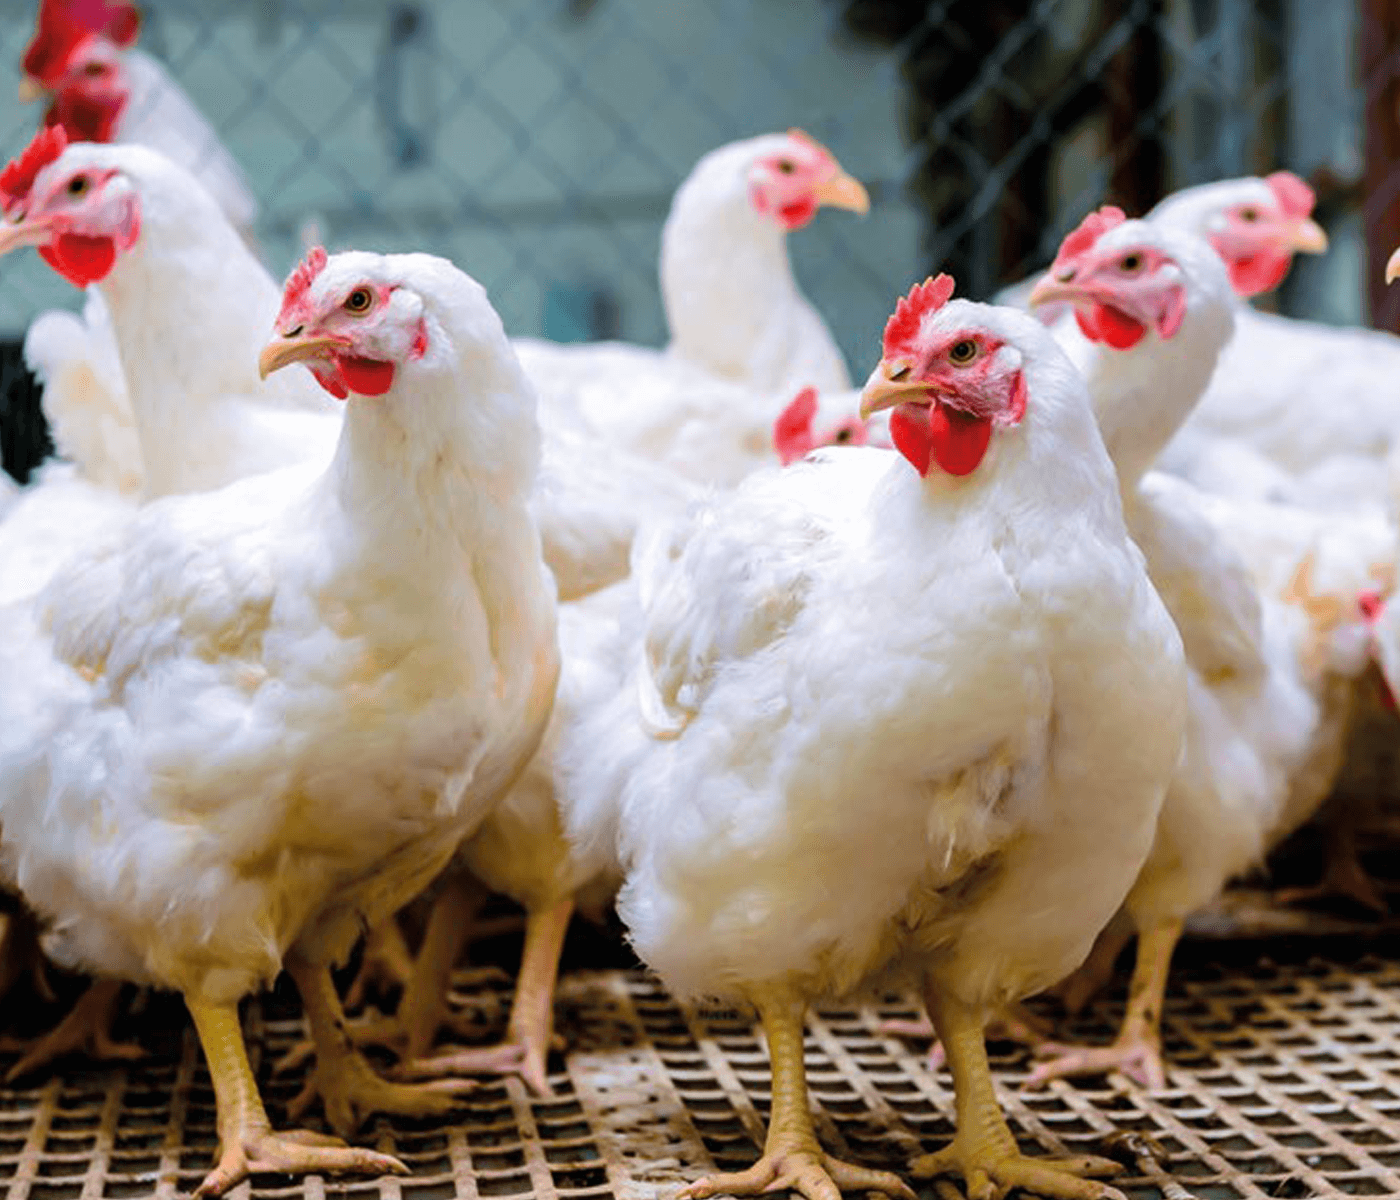 Importancia de la distribución a la hora de la alimentación de pollitas reproductoras pesadas sobre la uniformidad  -Parte 1-